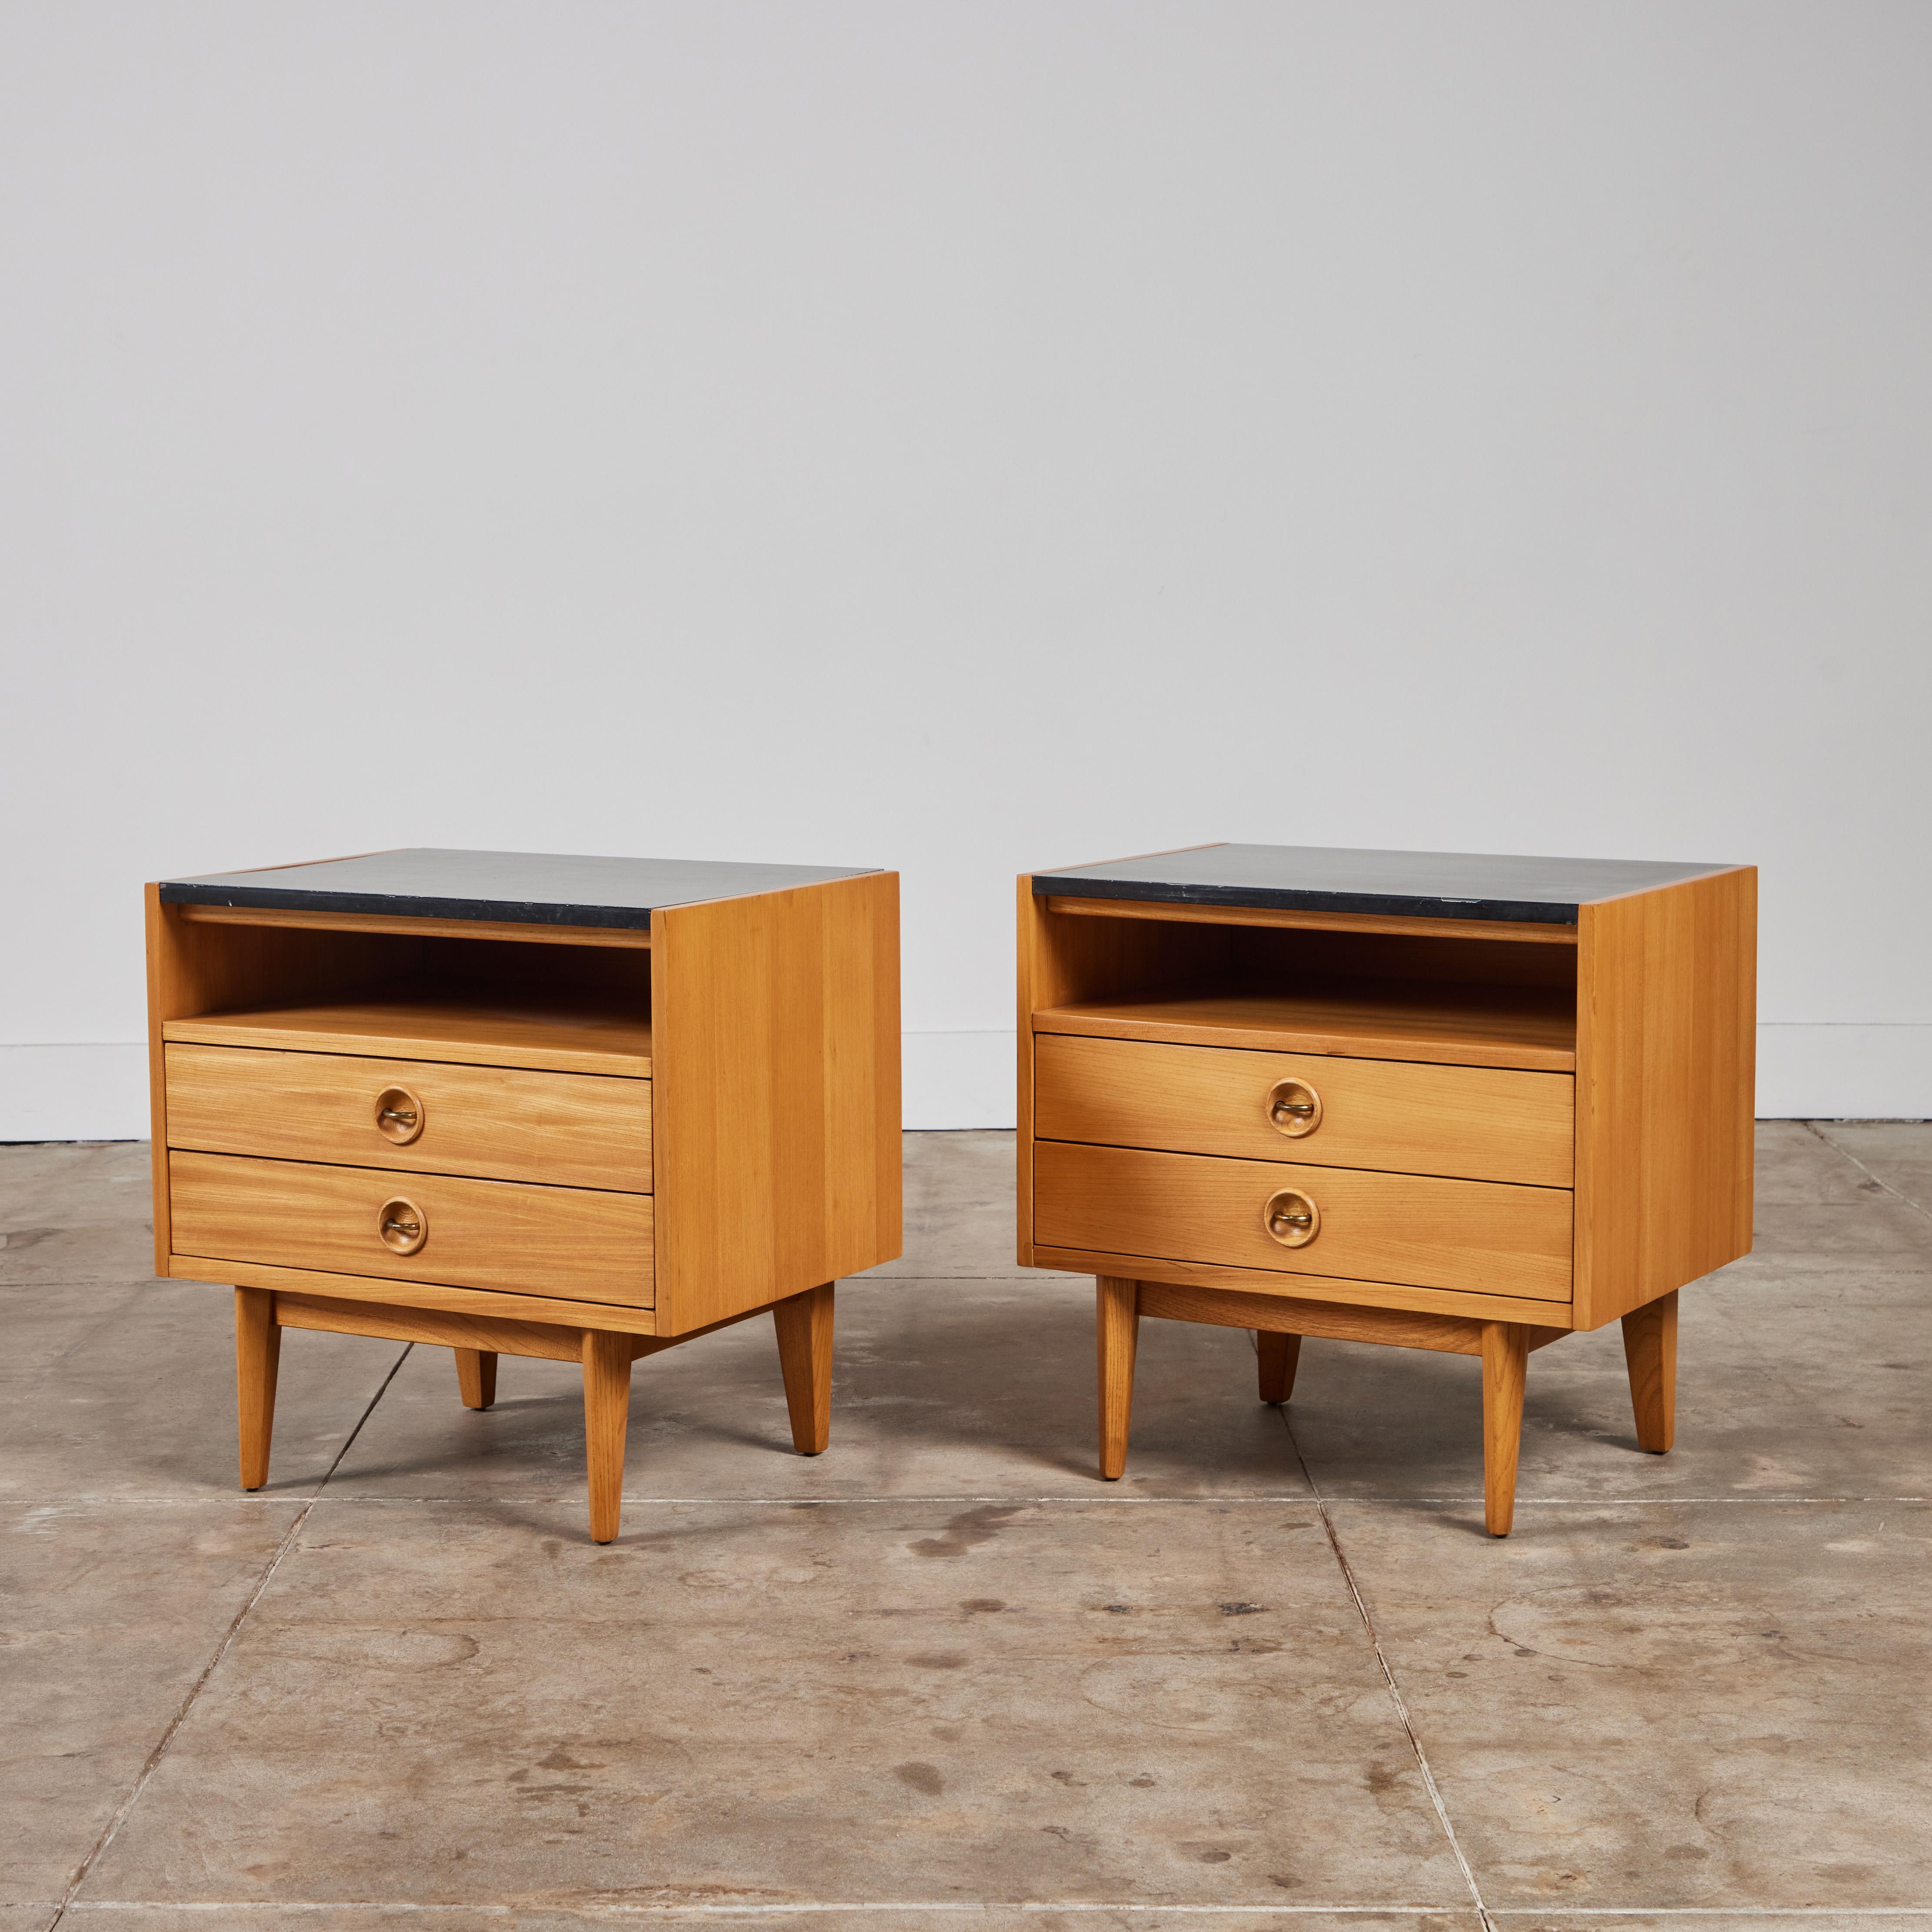 Ein Paar Nachttische aus Eichenholz von American of Martinsville, ca. 1950, USA. Dieses minimalistische Design hat eine schwarze Laminatoberfläche, zwei Schubladen mit geschwungenen Messinggriffen und ein offenes Regal zwischen Tischplatte und